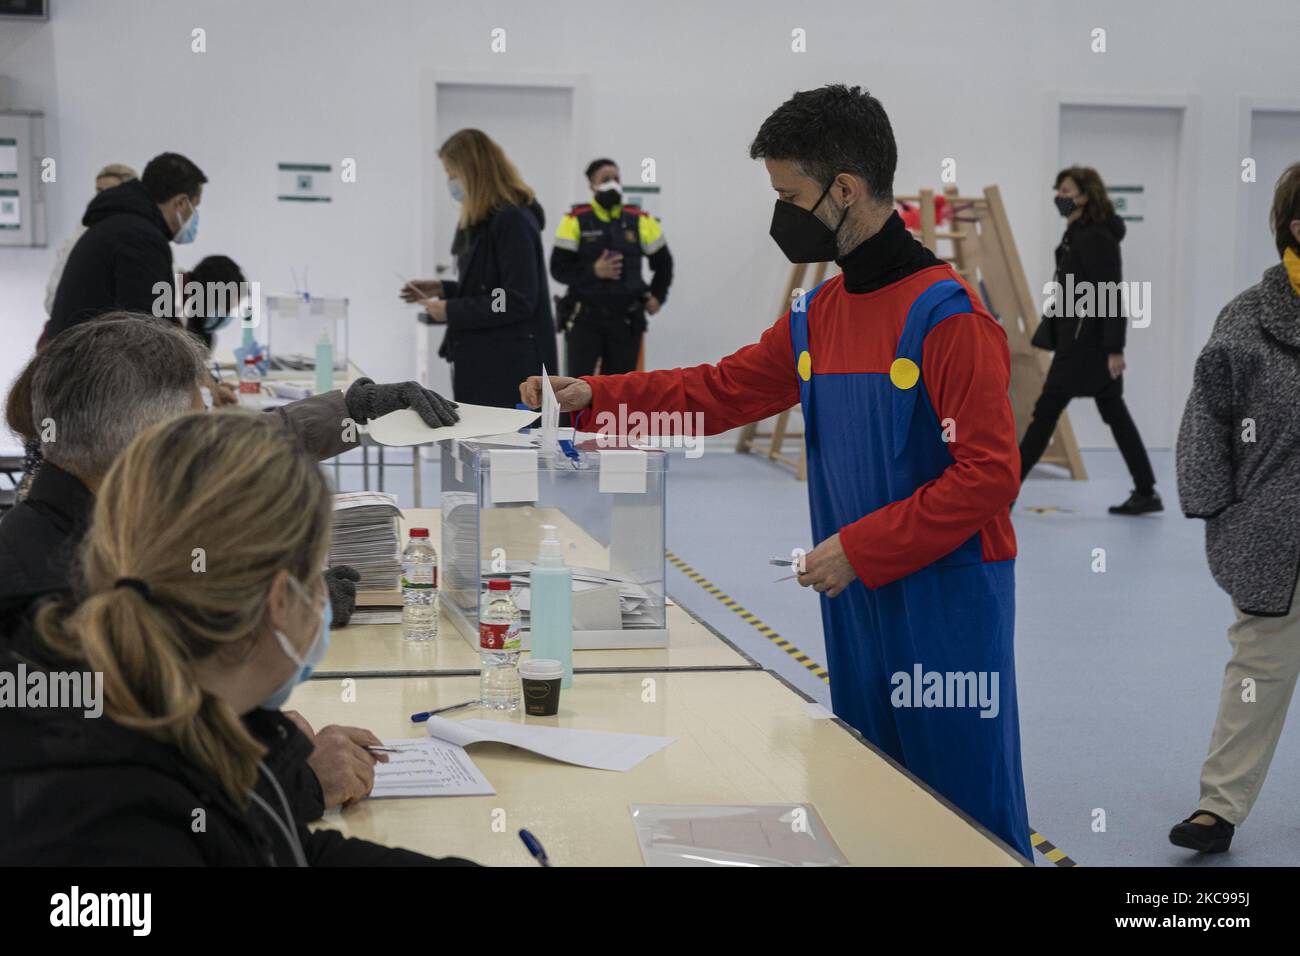 Un caballero vestido con un disfraz de personaje de videojuegos Mario Bros  ejerce su voto durante las Elecciones Regionales de Cataluña de esta mañana  el 14 de febrero de 2021, en el